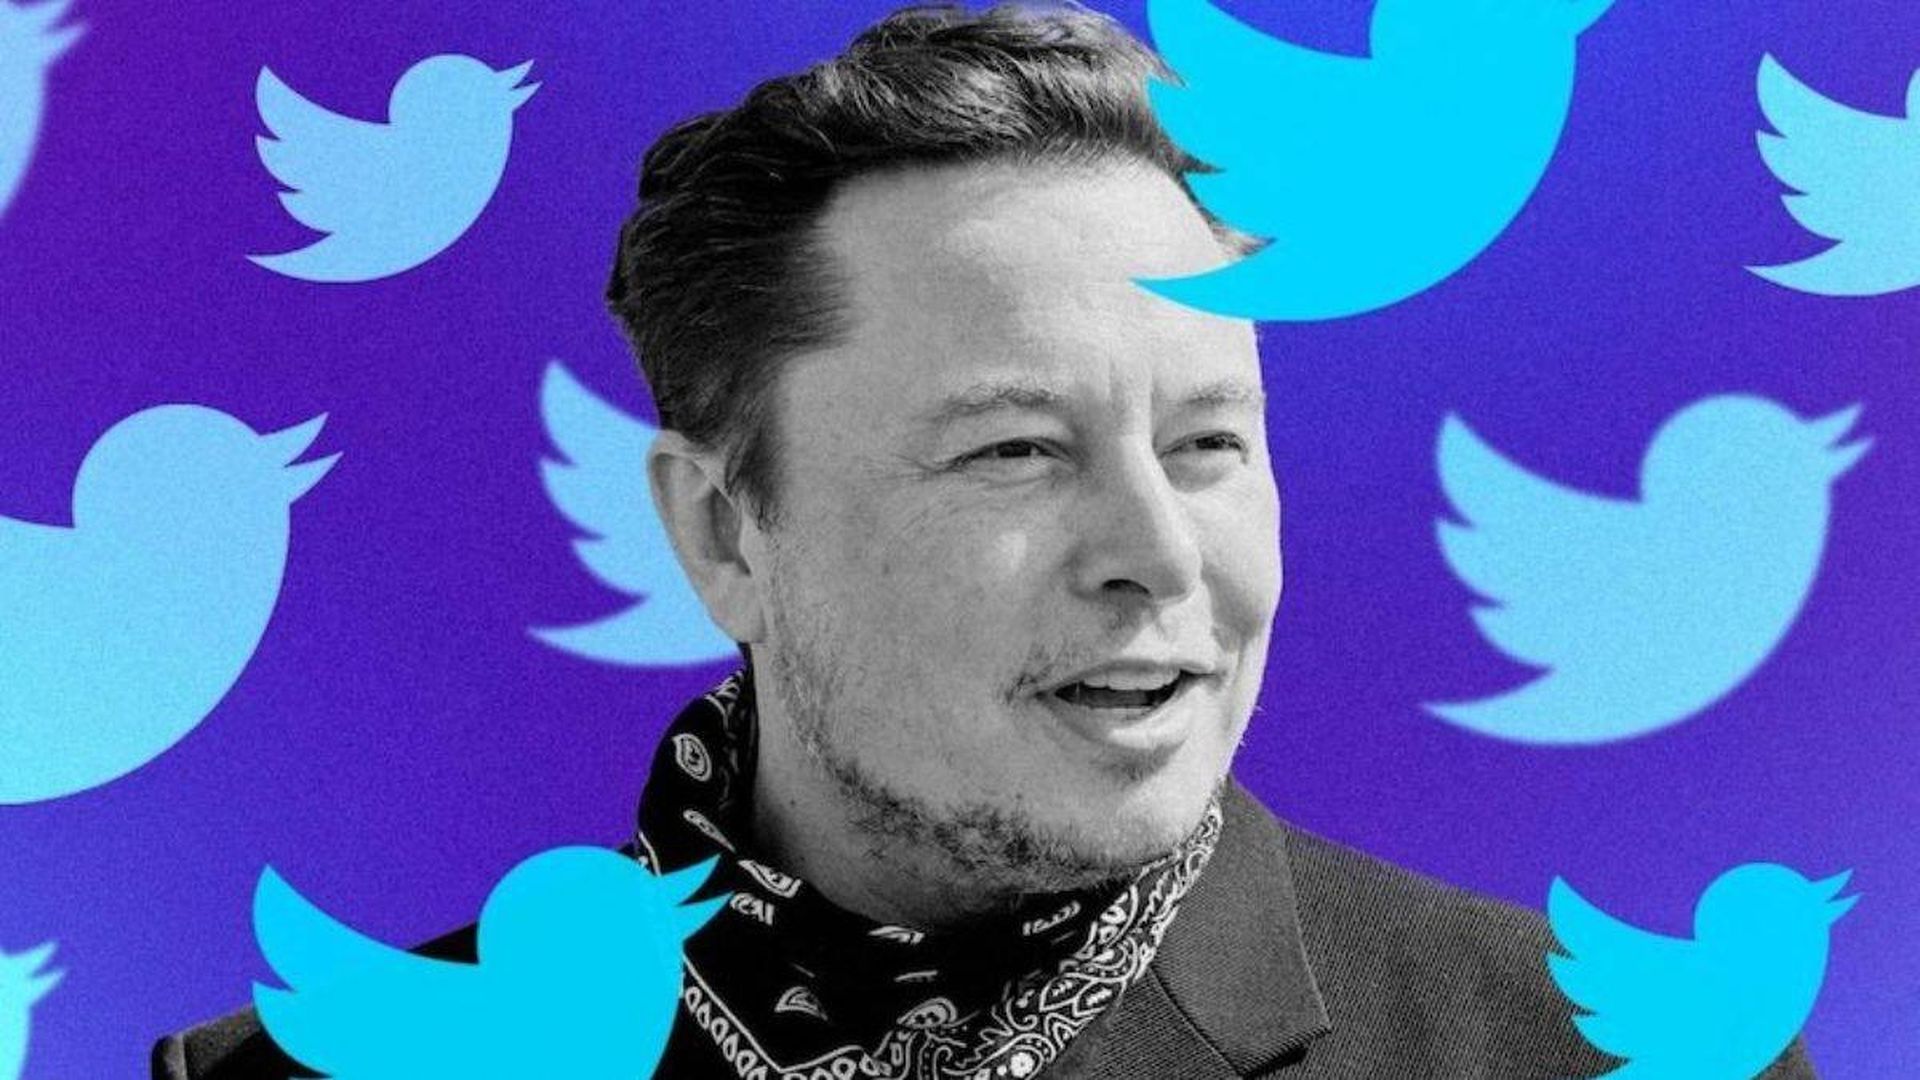 Umowa z Elonem Muskiem na Twitterze została wstrzymana